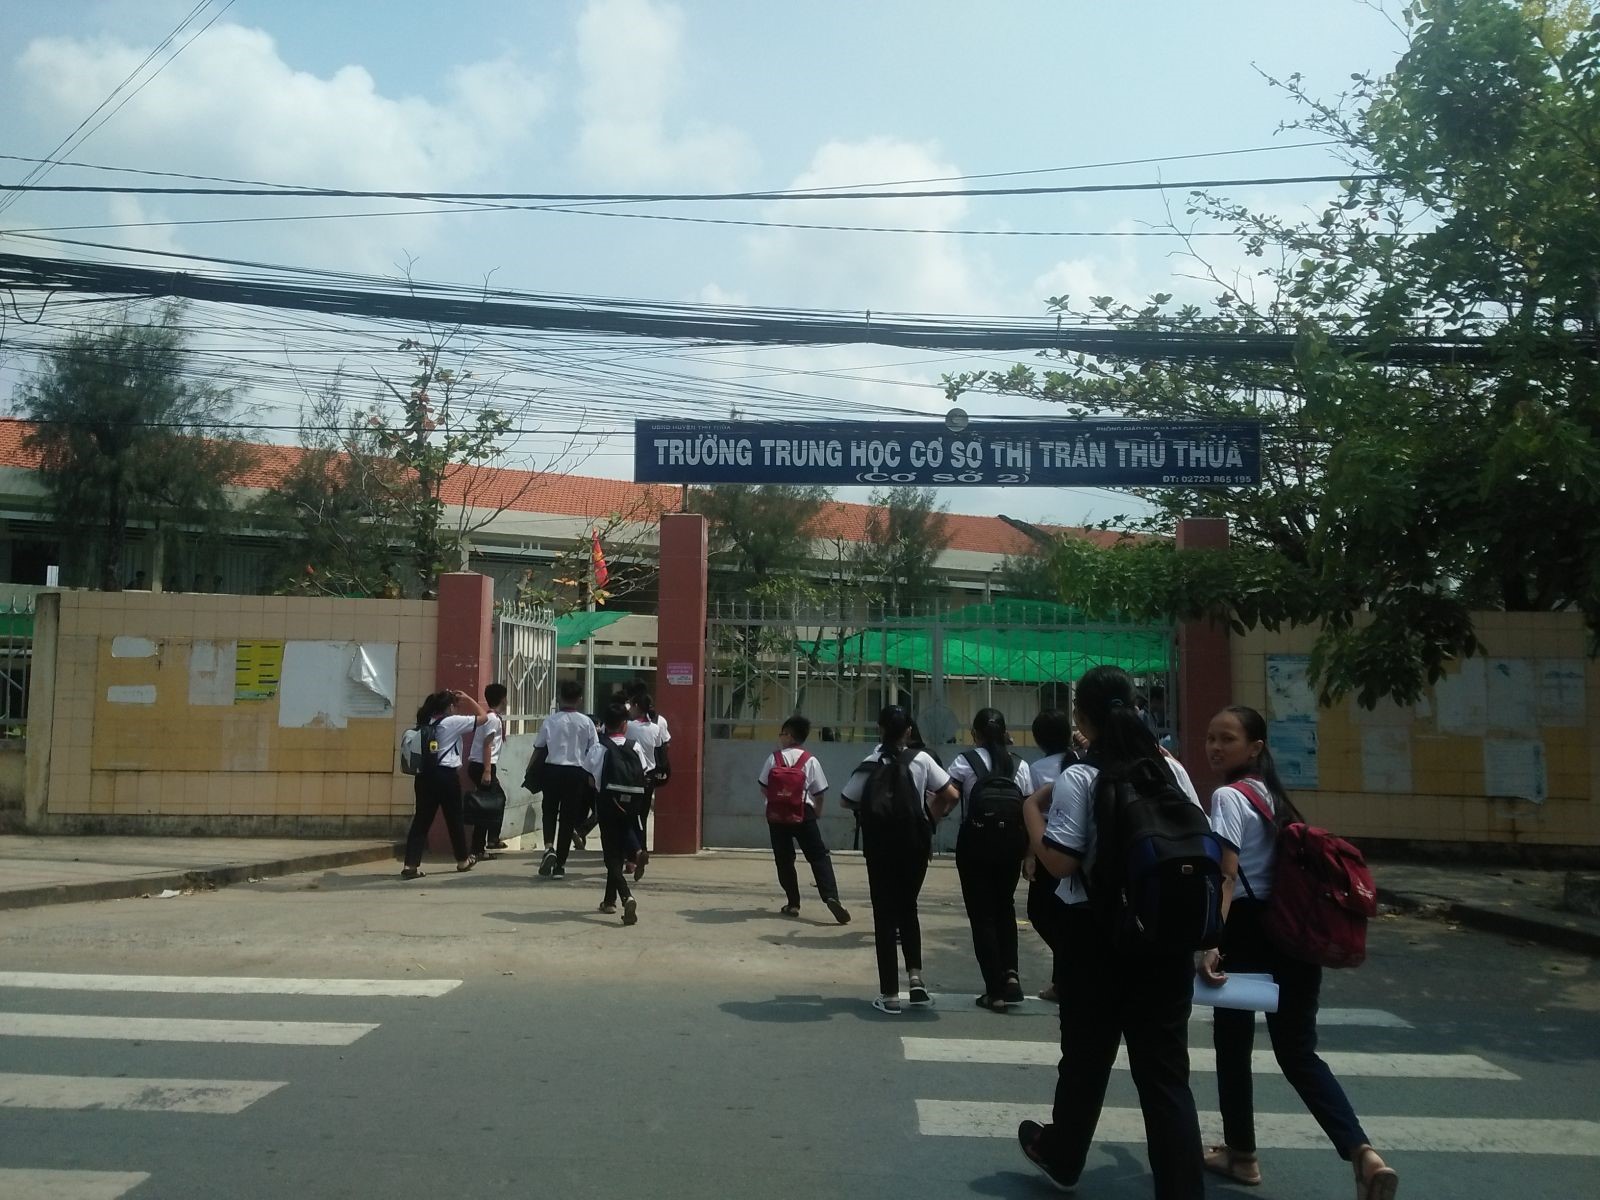 Trường THCS thị trấn Thủ Thừa nơi phát hiện hơn 20 học sinh hút chất Shisha trong lớp học